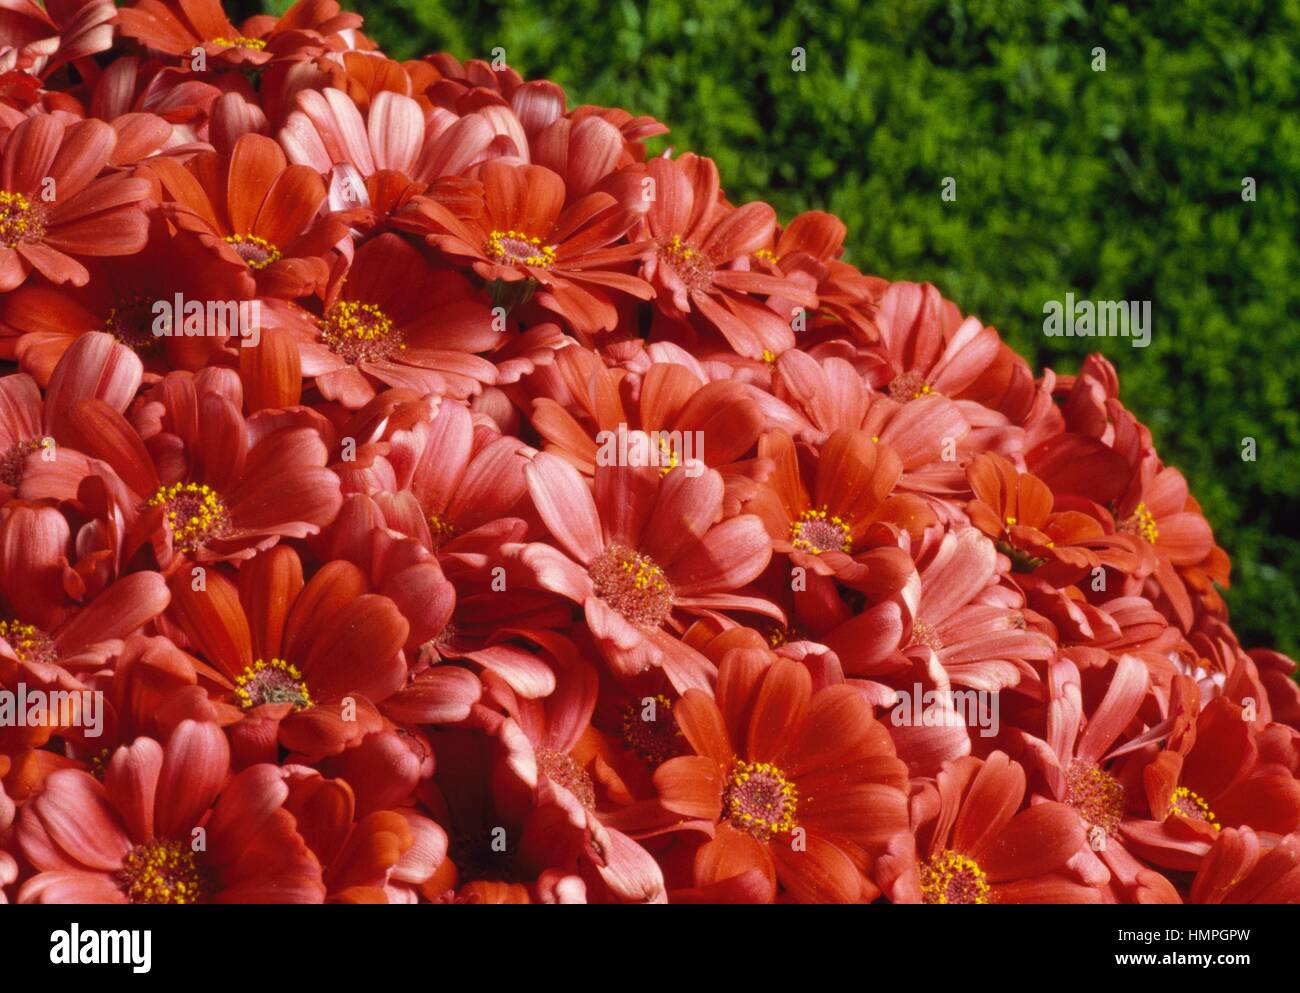 Cineraria (Senecio cruentus), Asteraceae. Stock Photo